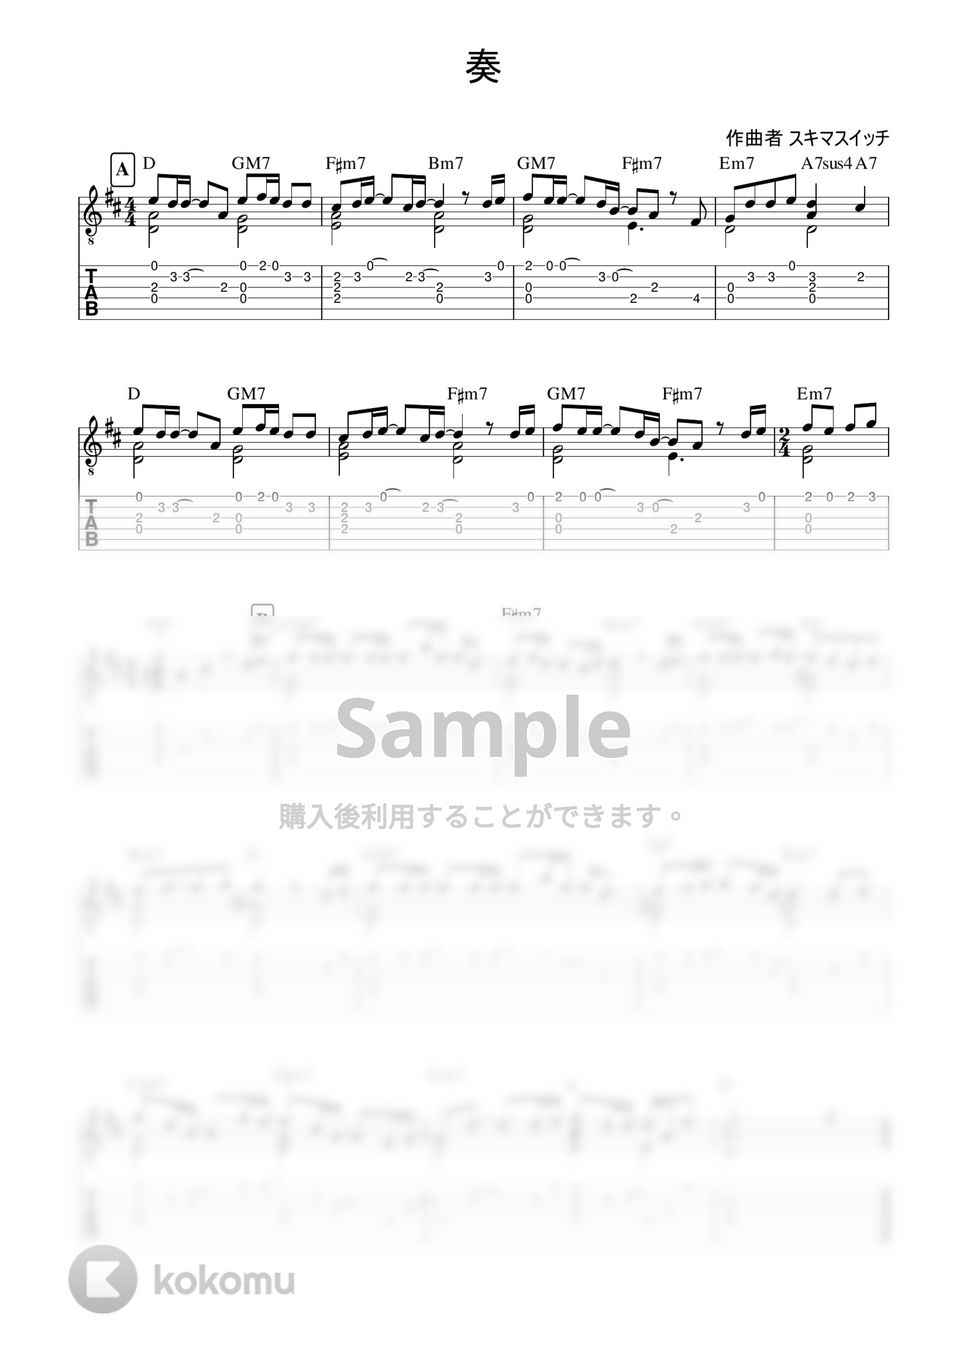 スキマスイッチ - 【奏】4本弦で弾ける簡単ソロギター (ギターソロ) by 早乙女浩司